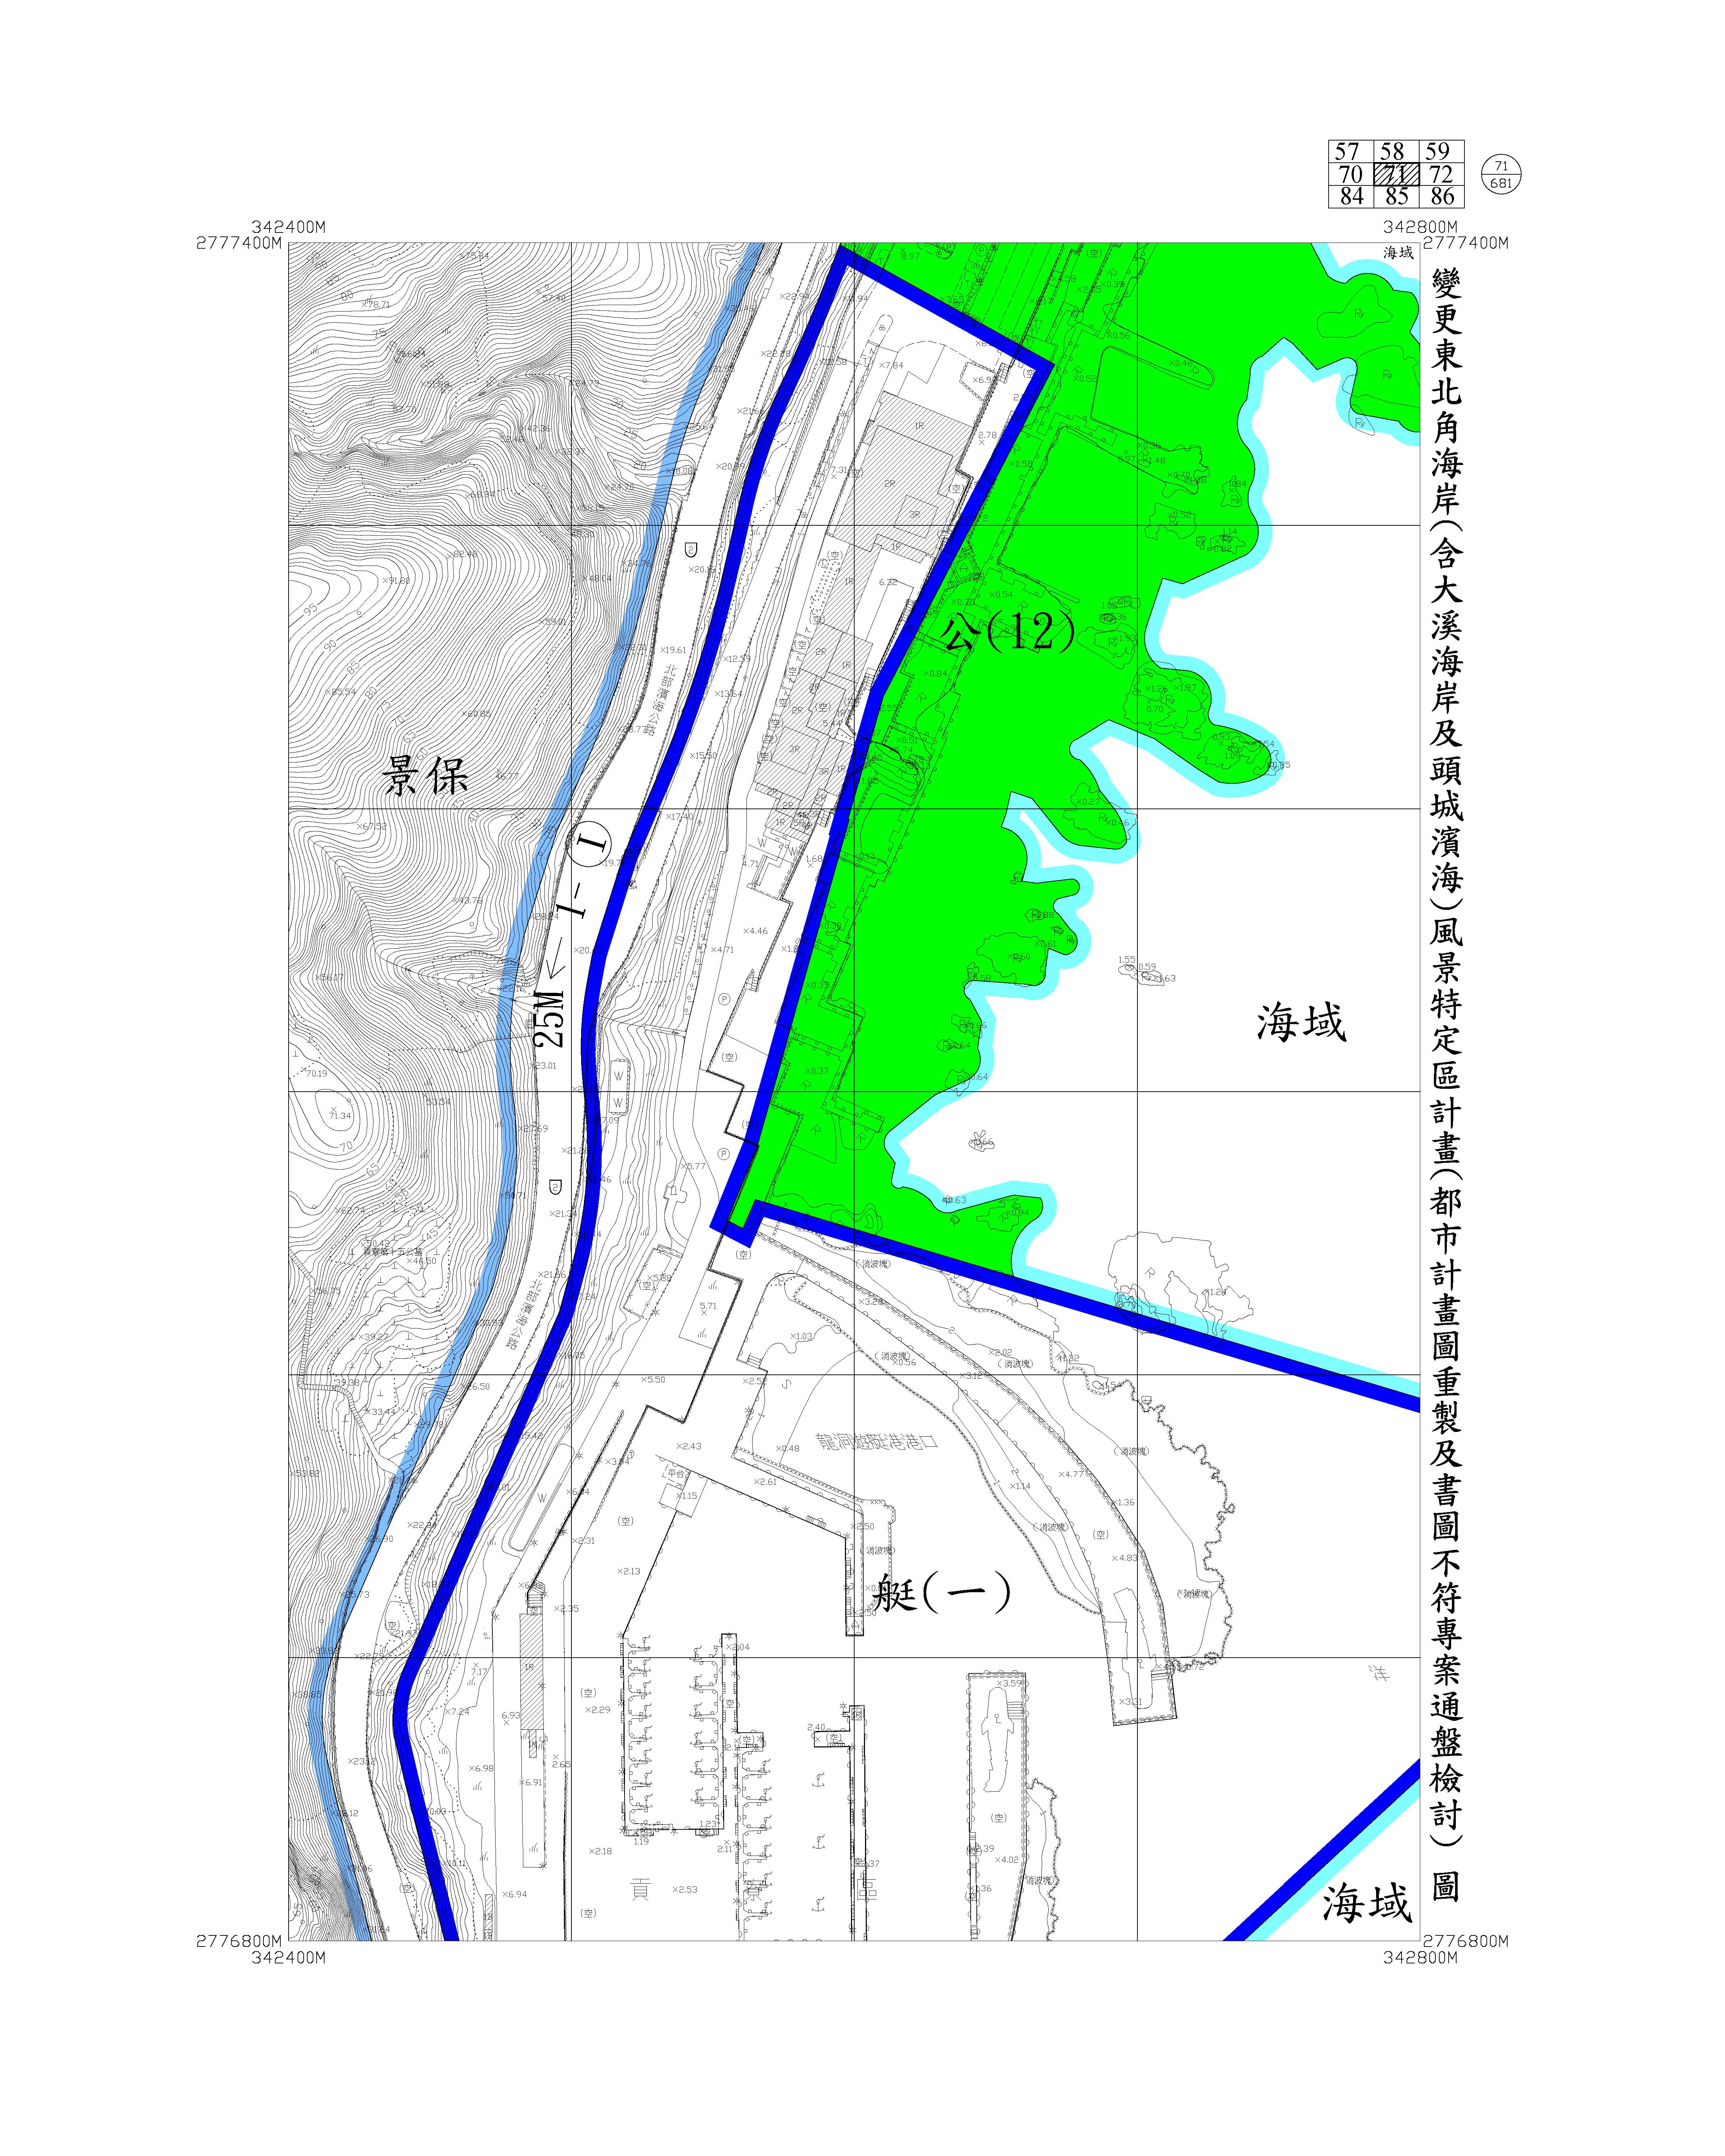 含大溪海岸及頭城濱海都市計畫圖重製及書圖不符專案通盤檢討圖資80